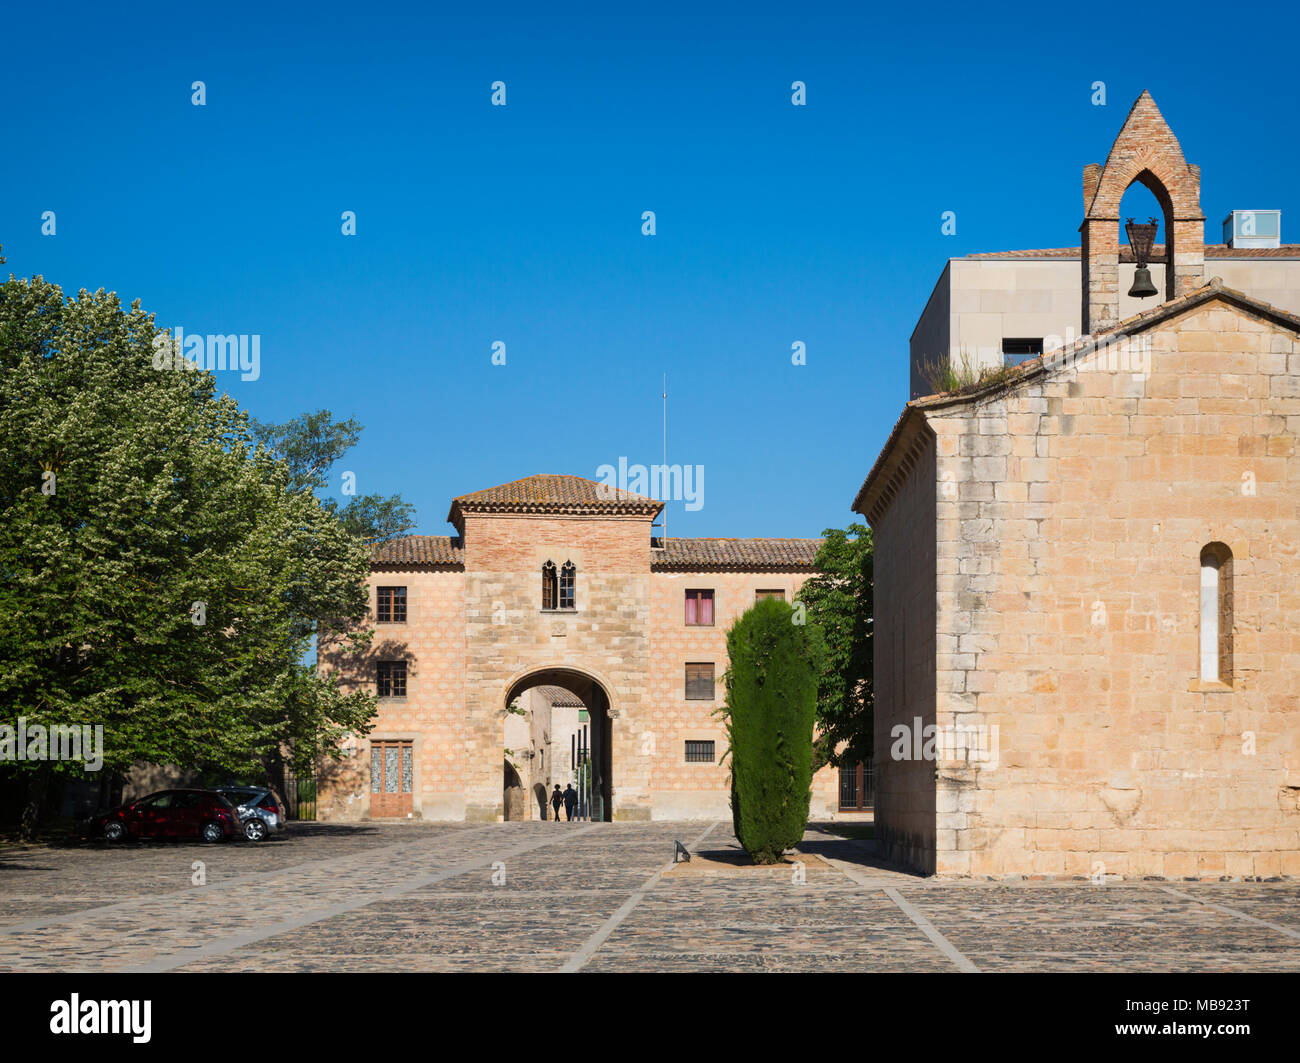 Royal Abbazia di Santa Maria de Poblet, provincia di Tarragona Catalogna. Il monastero cistercense fu fondata nel 1151 ed è un patrimonio mondiale Herita Foto Stock